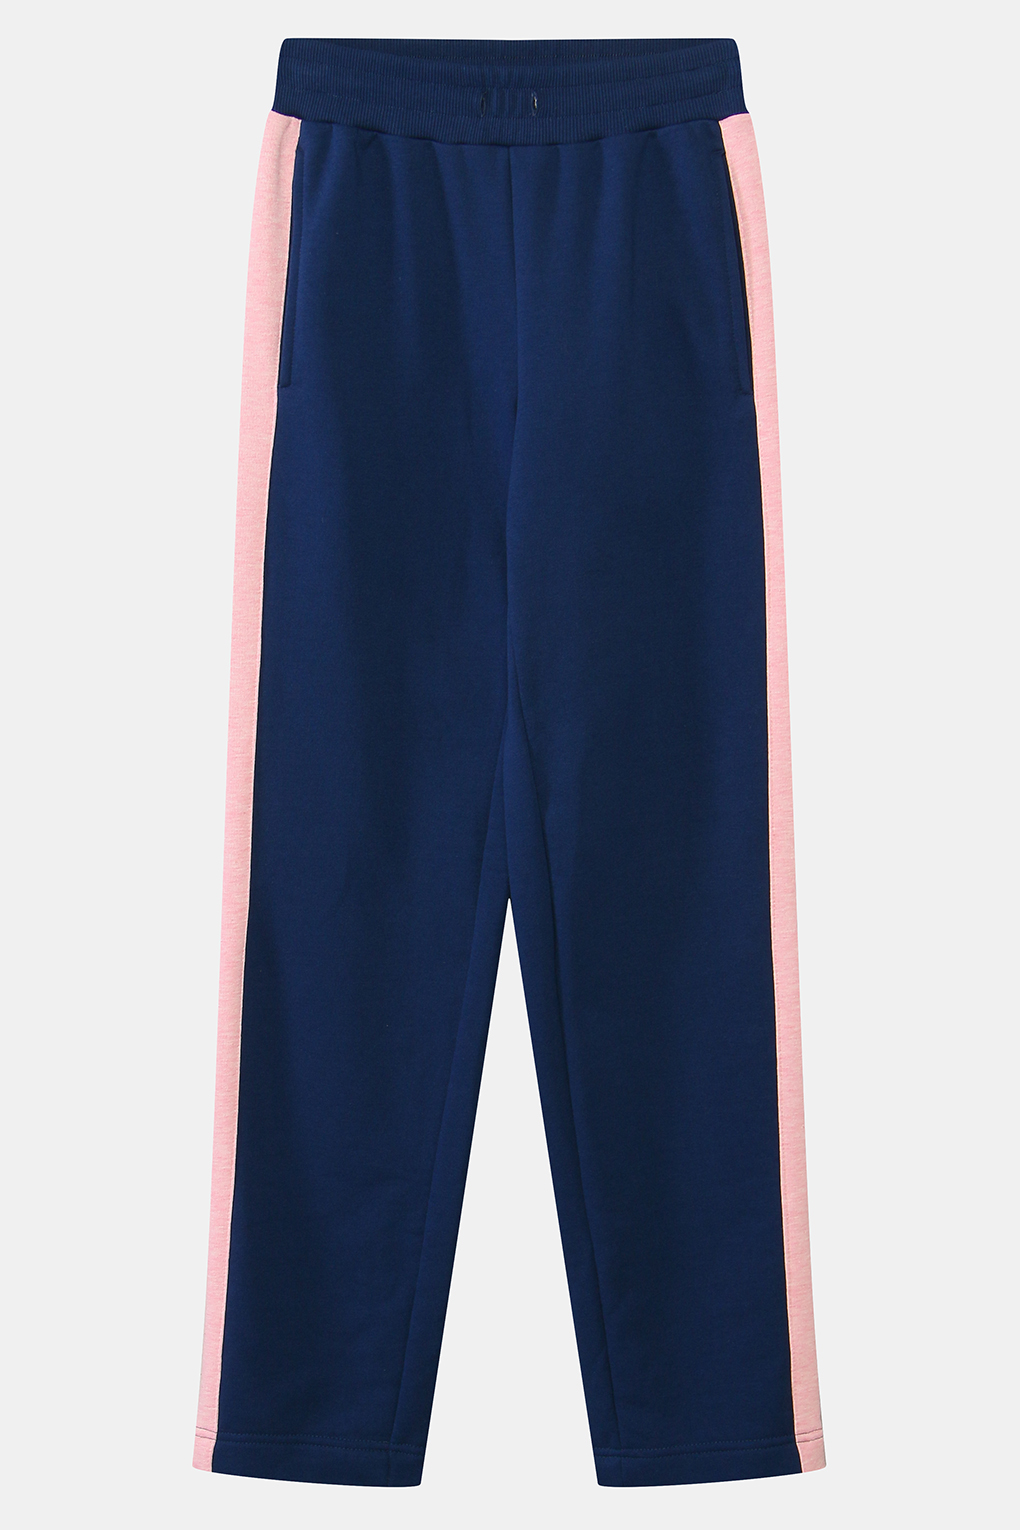 Спортивные брюки женские Belucci BL21042121CD-005 синие XS